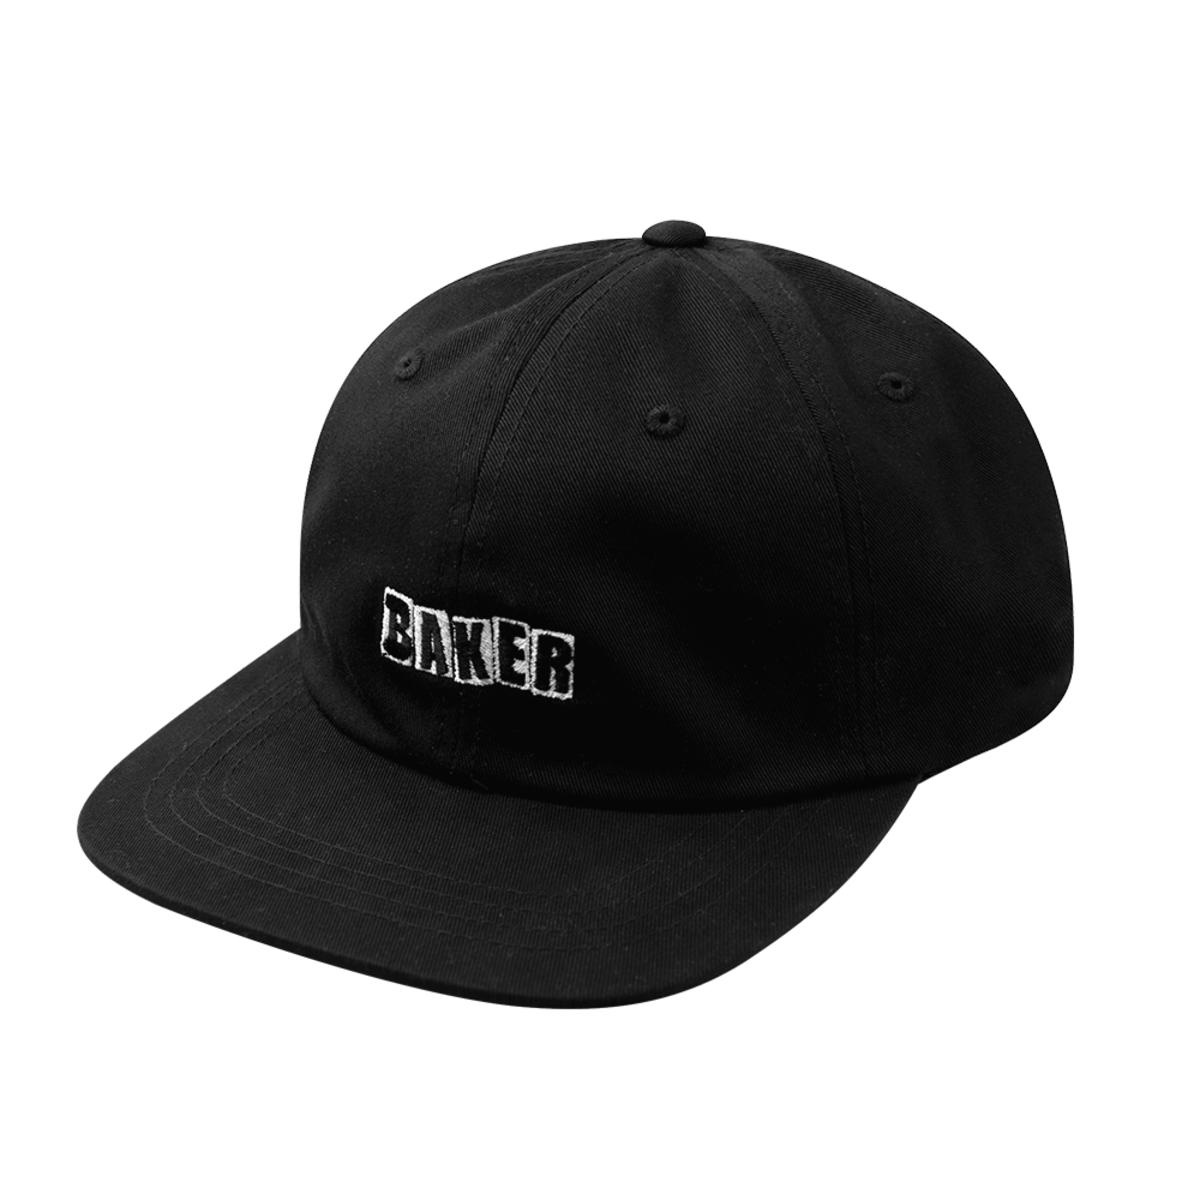 Baker Skateboard Hat Brand Logo Snap Back Black/White | eBay